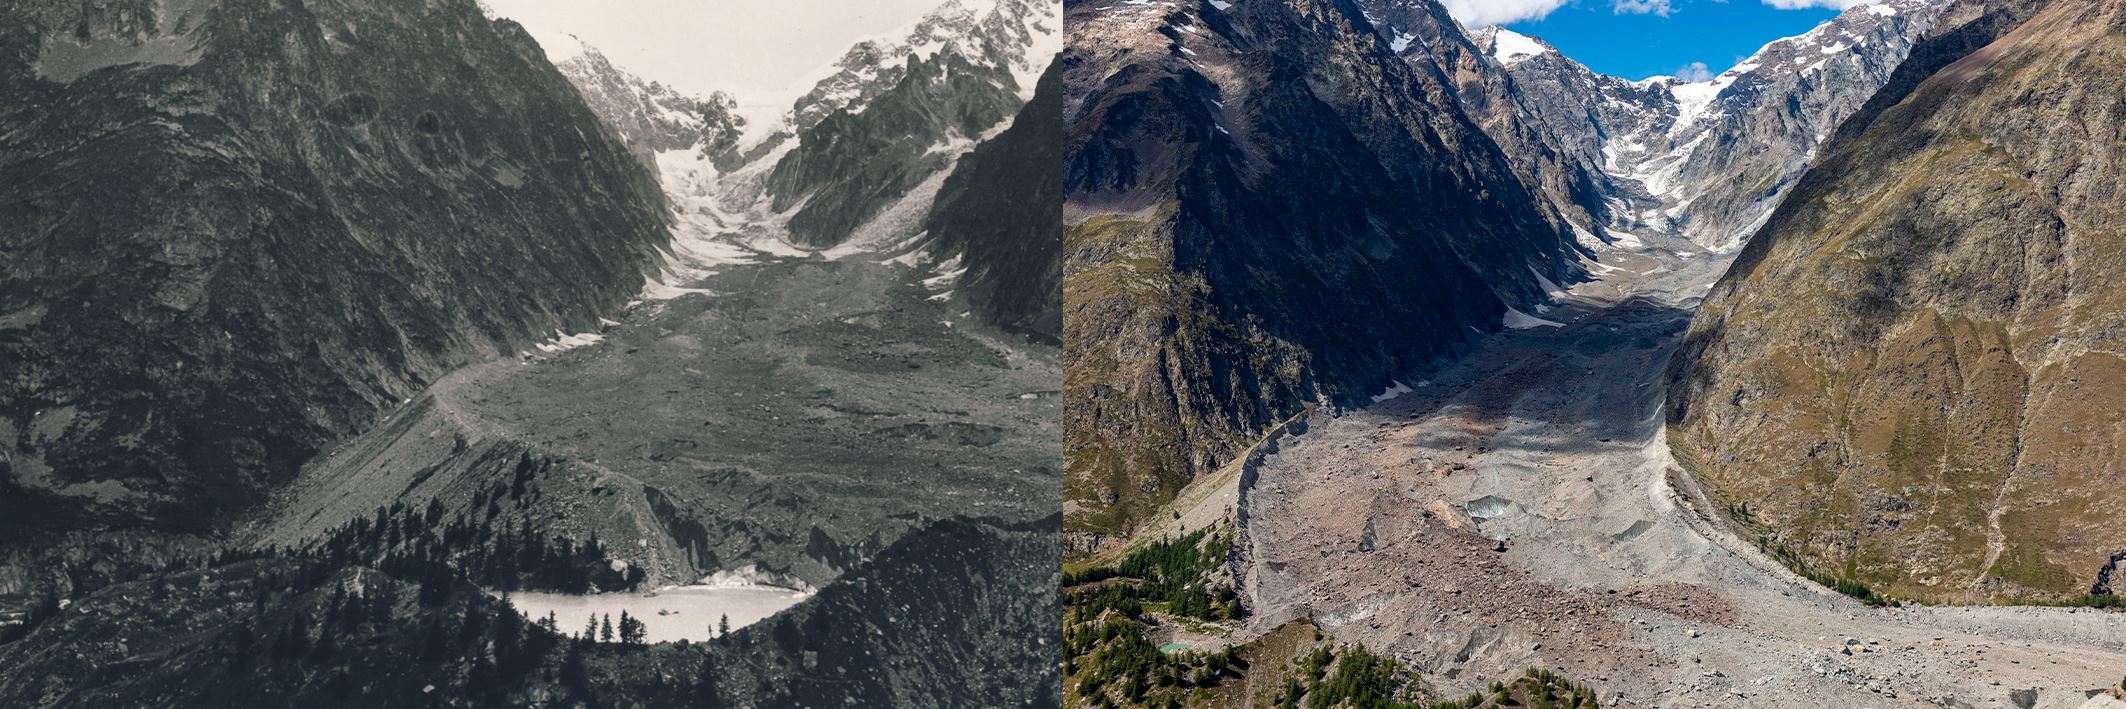 Immagini a confronto del ghiacciaio del Miage, nel Massiccio del Monte Bianco